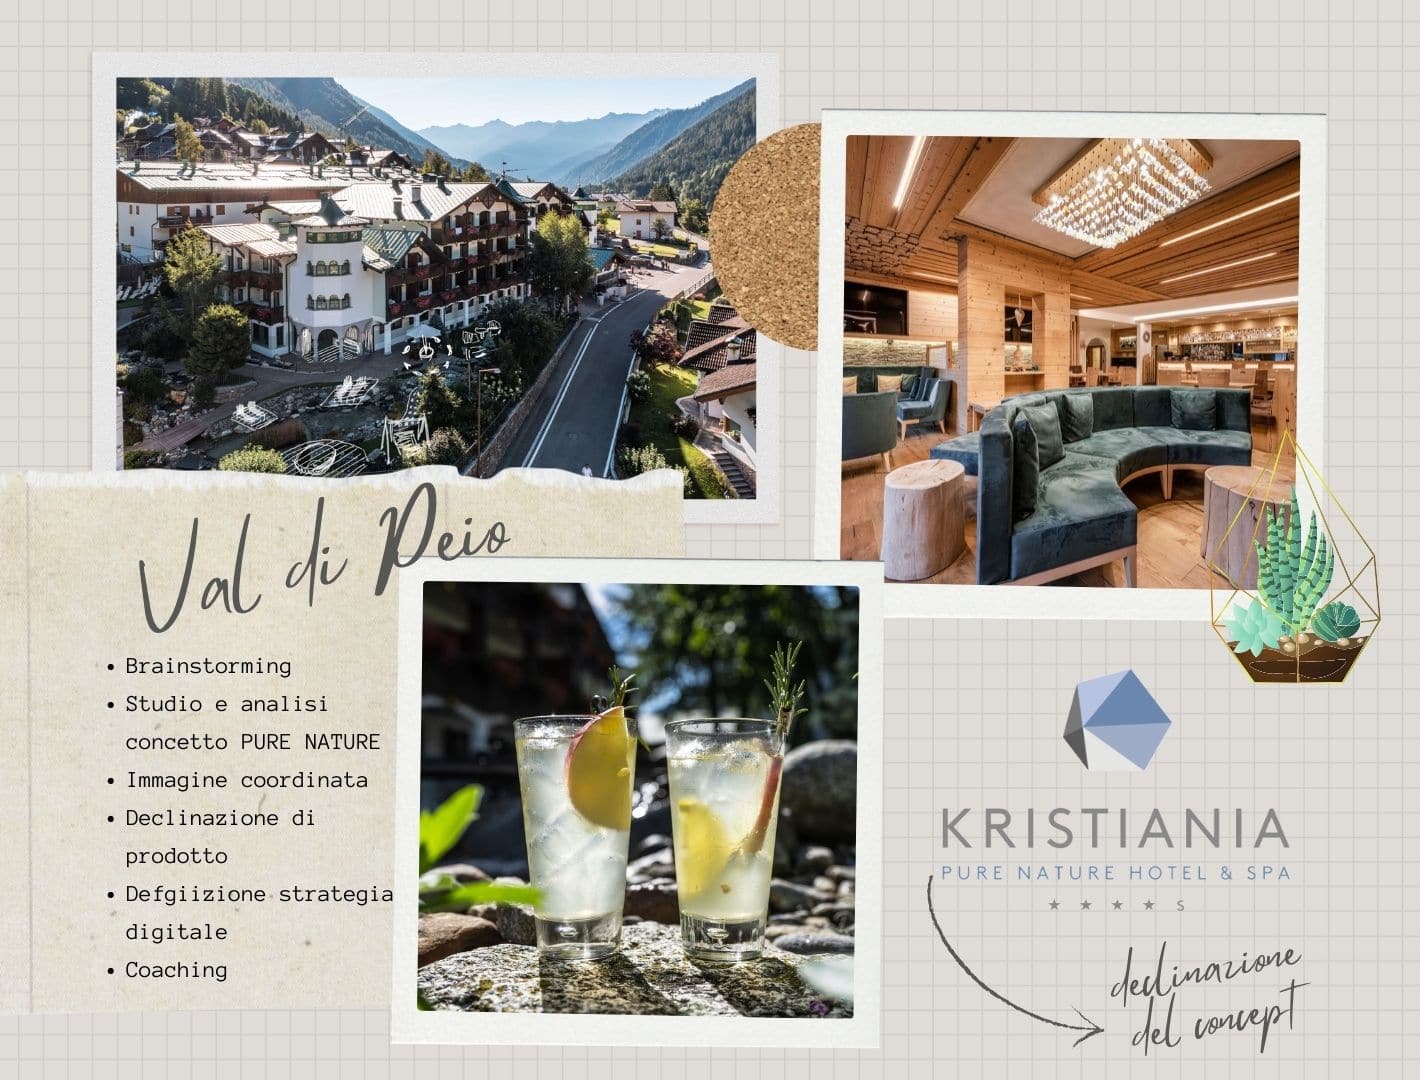 Kristiania – Pure Nature Hotel & Spa Val di Sole - Trentino